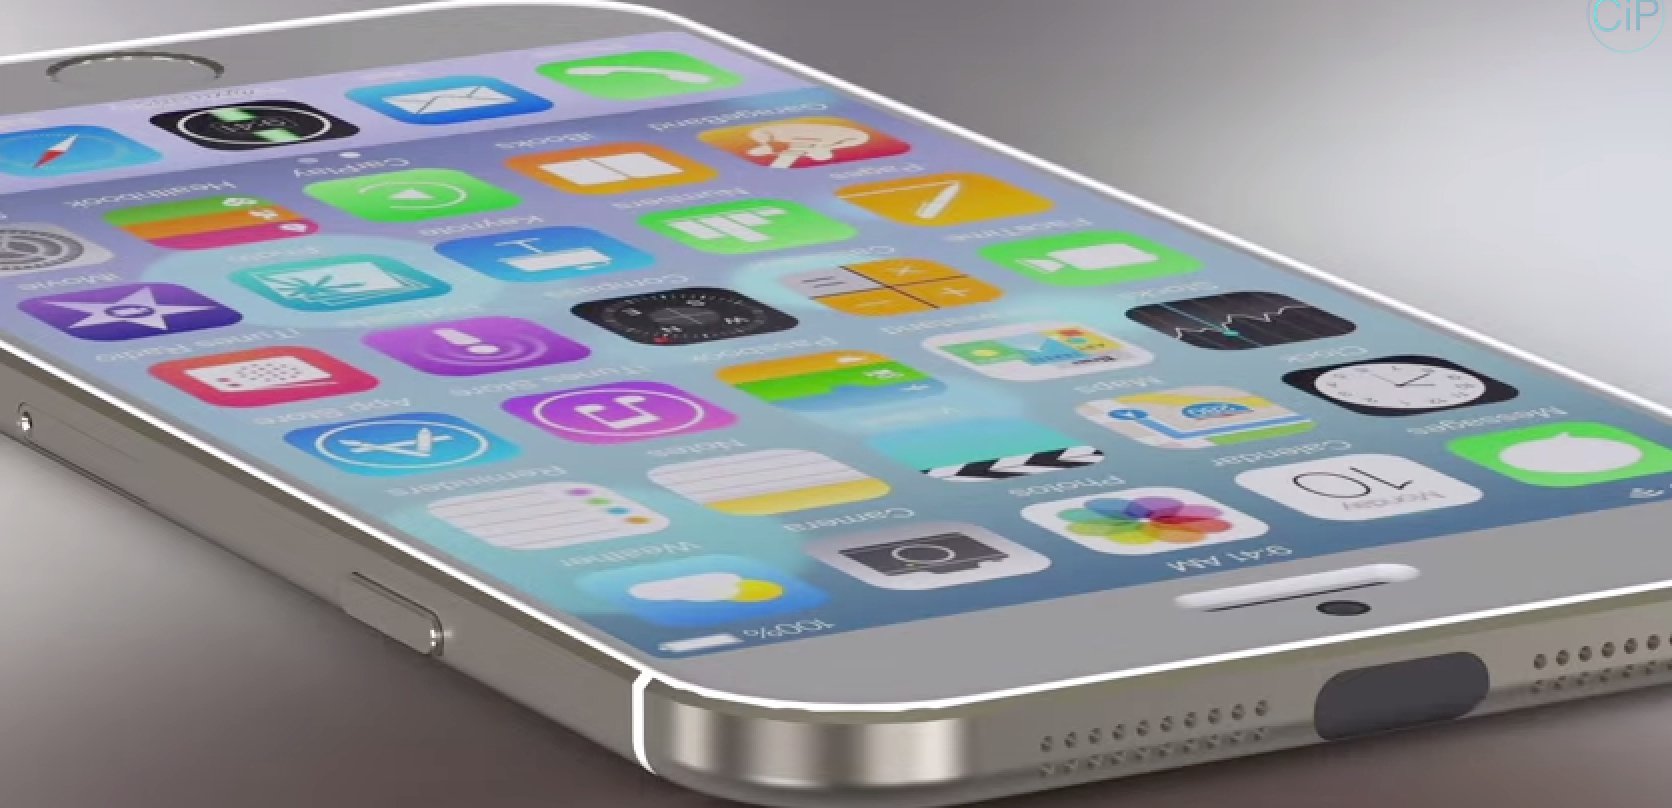 iPhone 6 mit iOS 8 im Vergleich mit Samsung Galaxy S5 (Konzept) 8